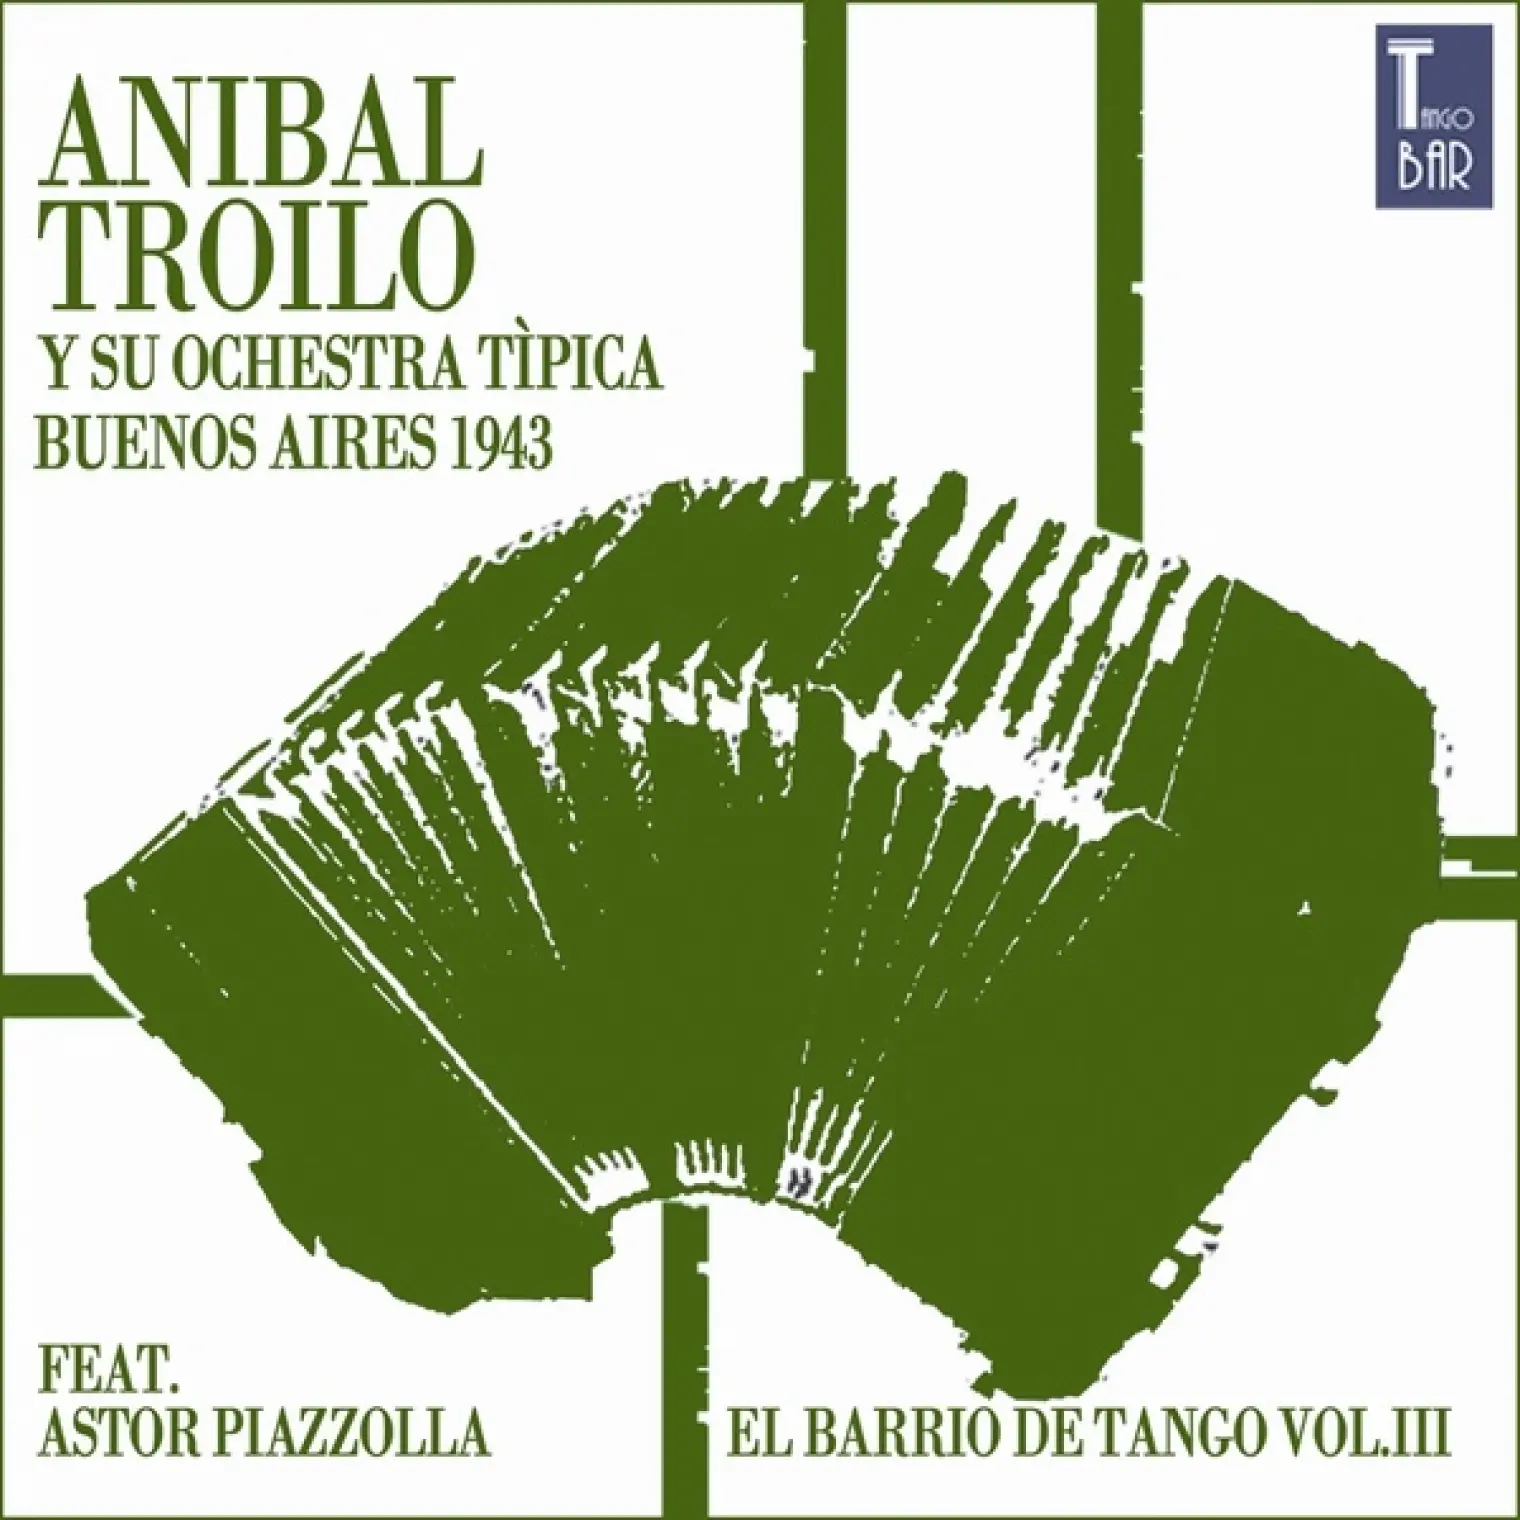 El Barrio de Tango, Vol. 3 (Die Ersten Aufnahmen von Astor Piazzolla) -  Anibal Troilo 